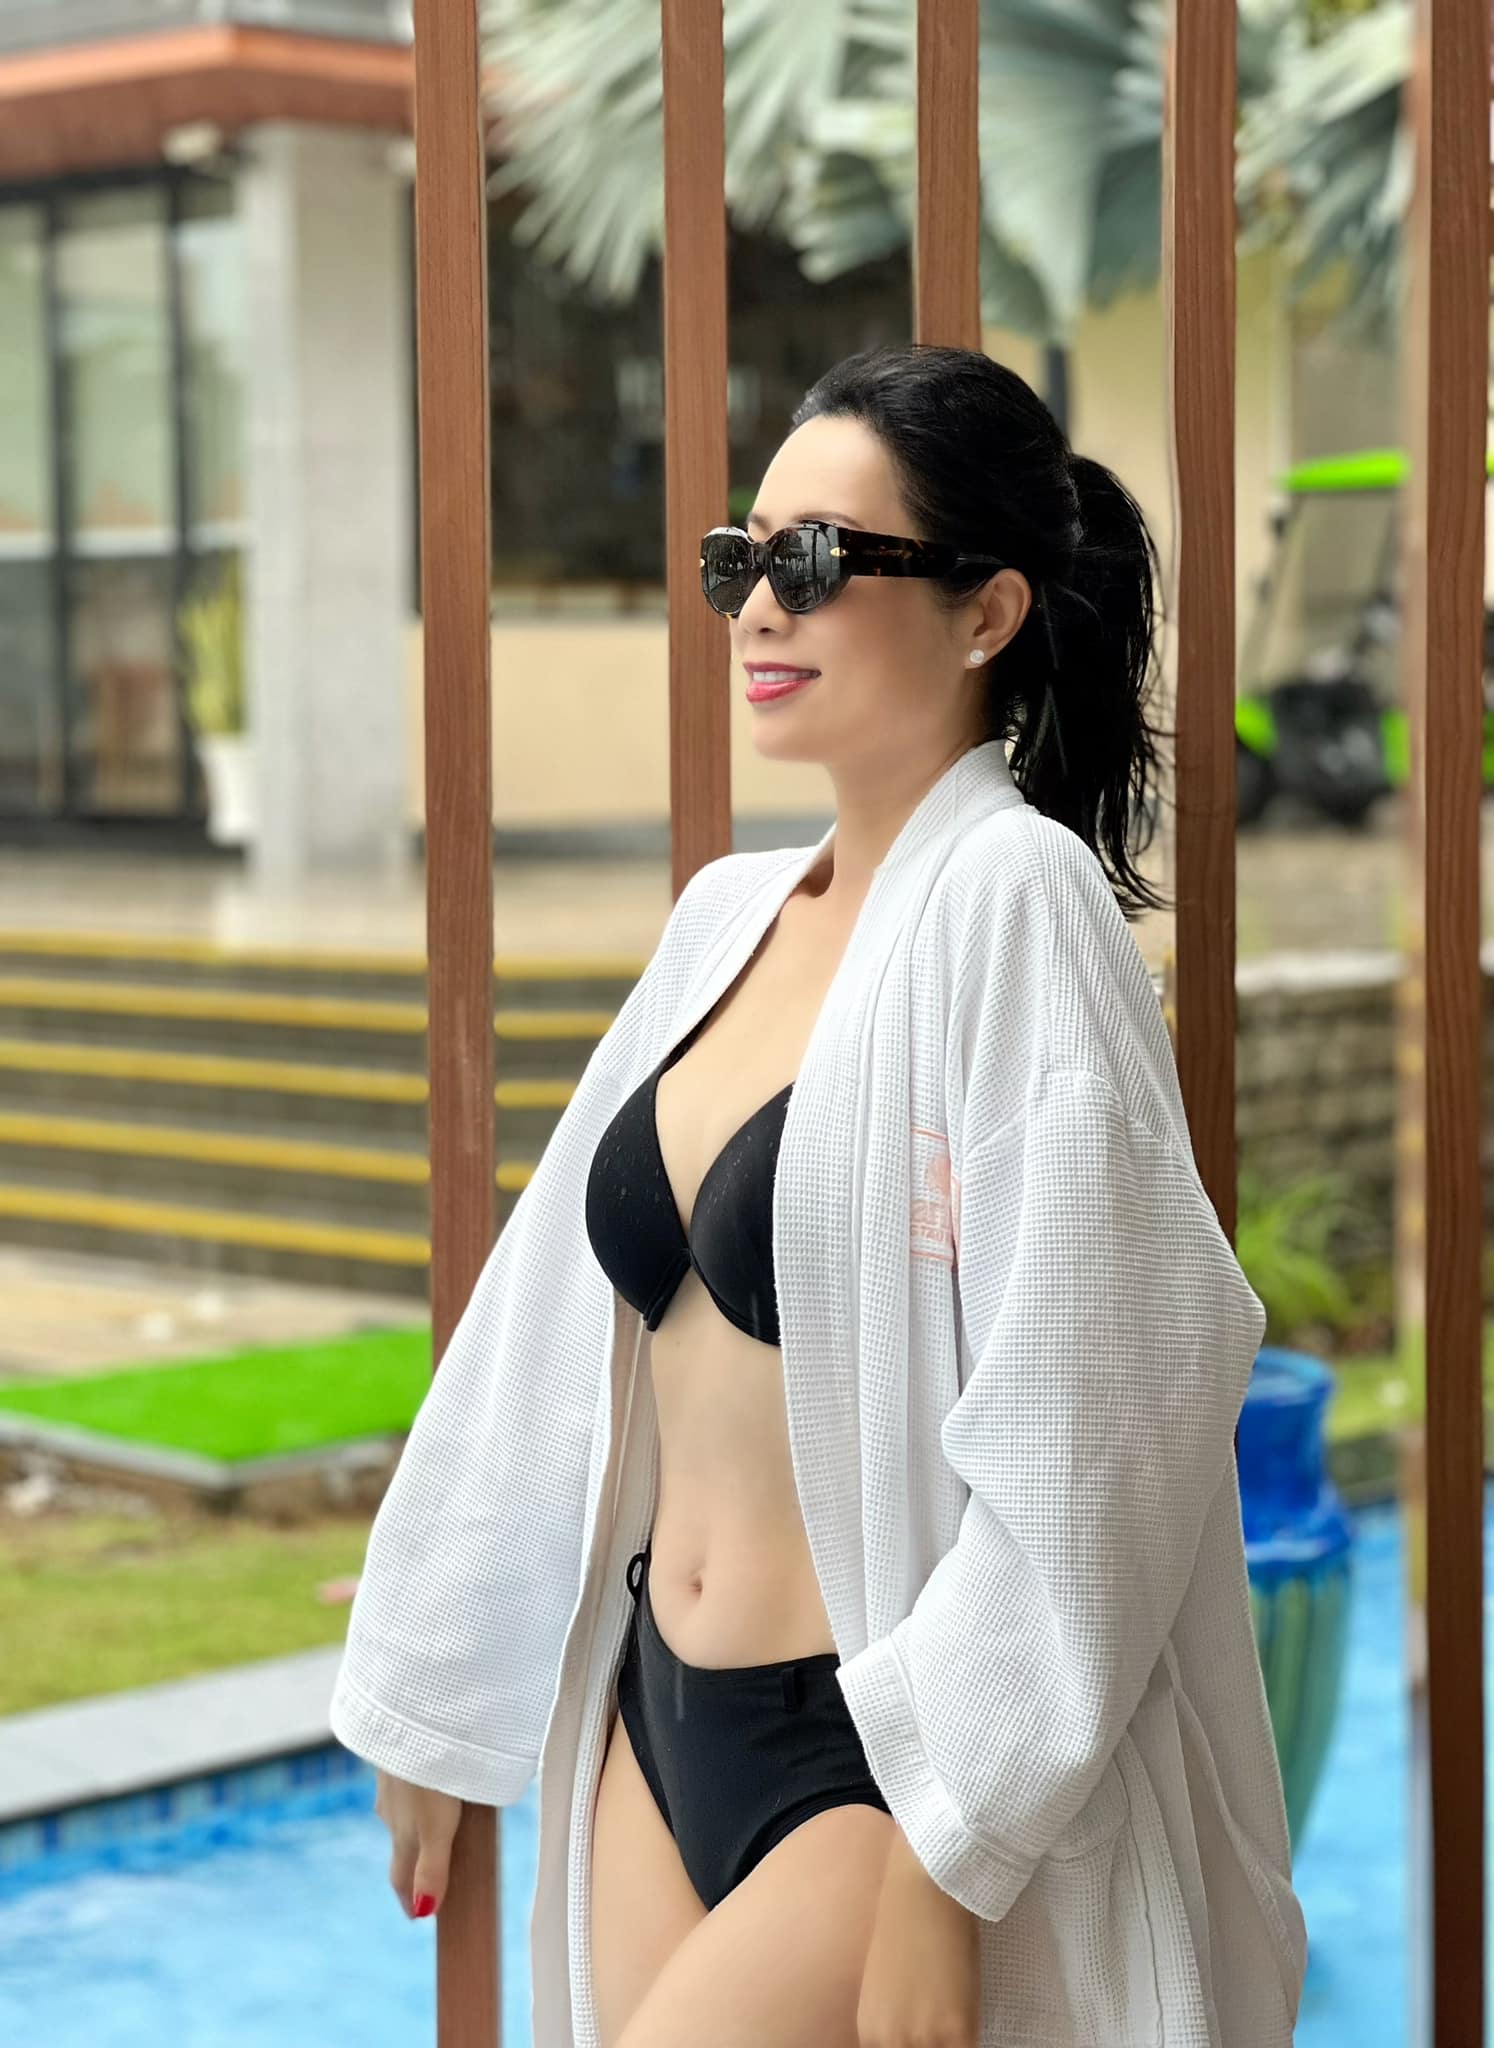 NSƯT Trịnh Kim Chi lại gây sốt với bikini ở tuổi 51 - Ảnh 1.